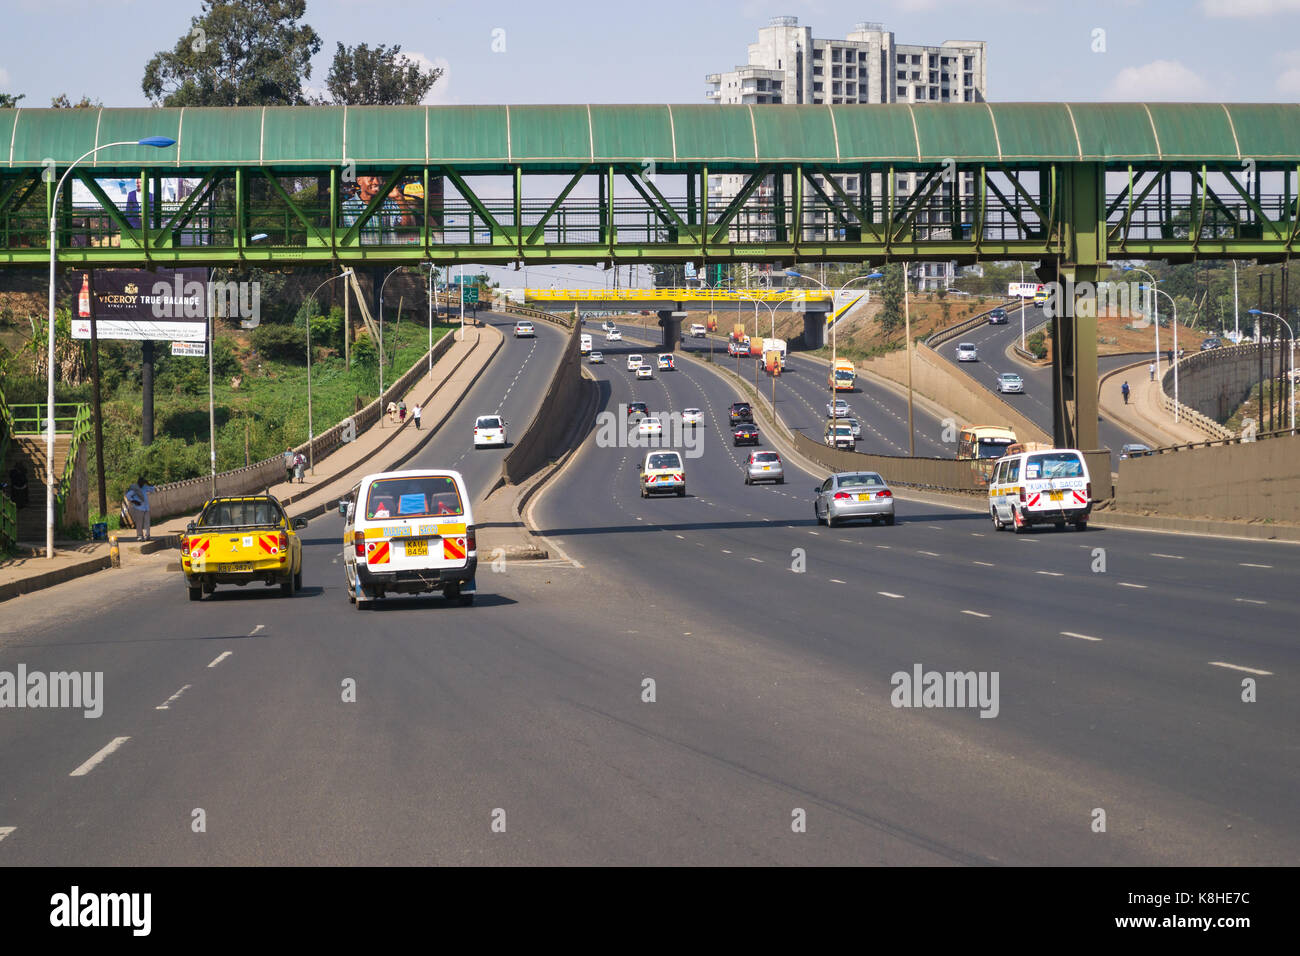 Thika Highway with vehicles and pedestrian overpass, Nairobi, Kenya Stock Photo